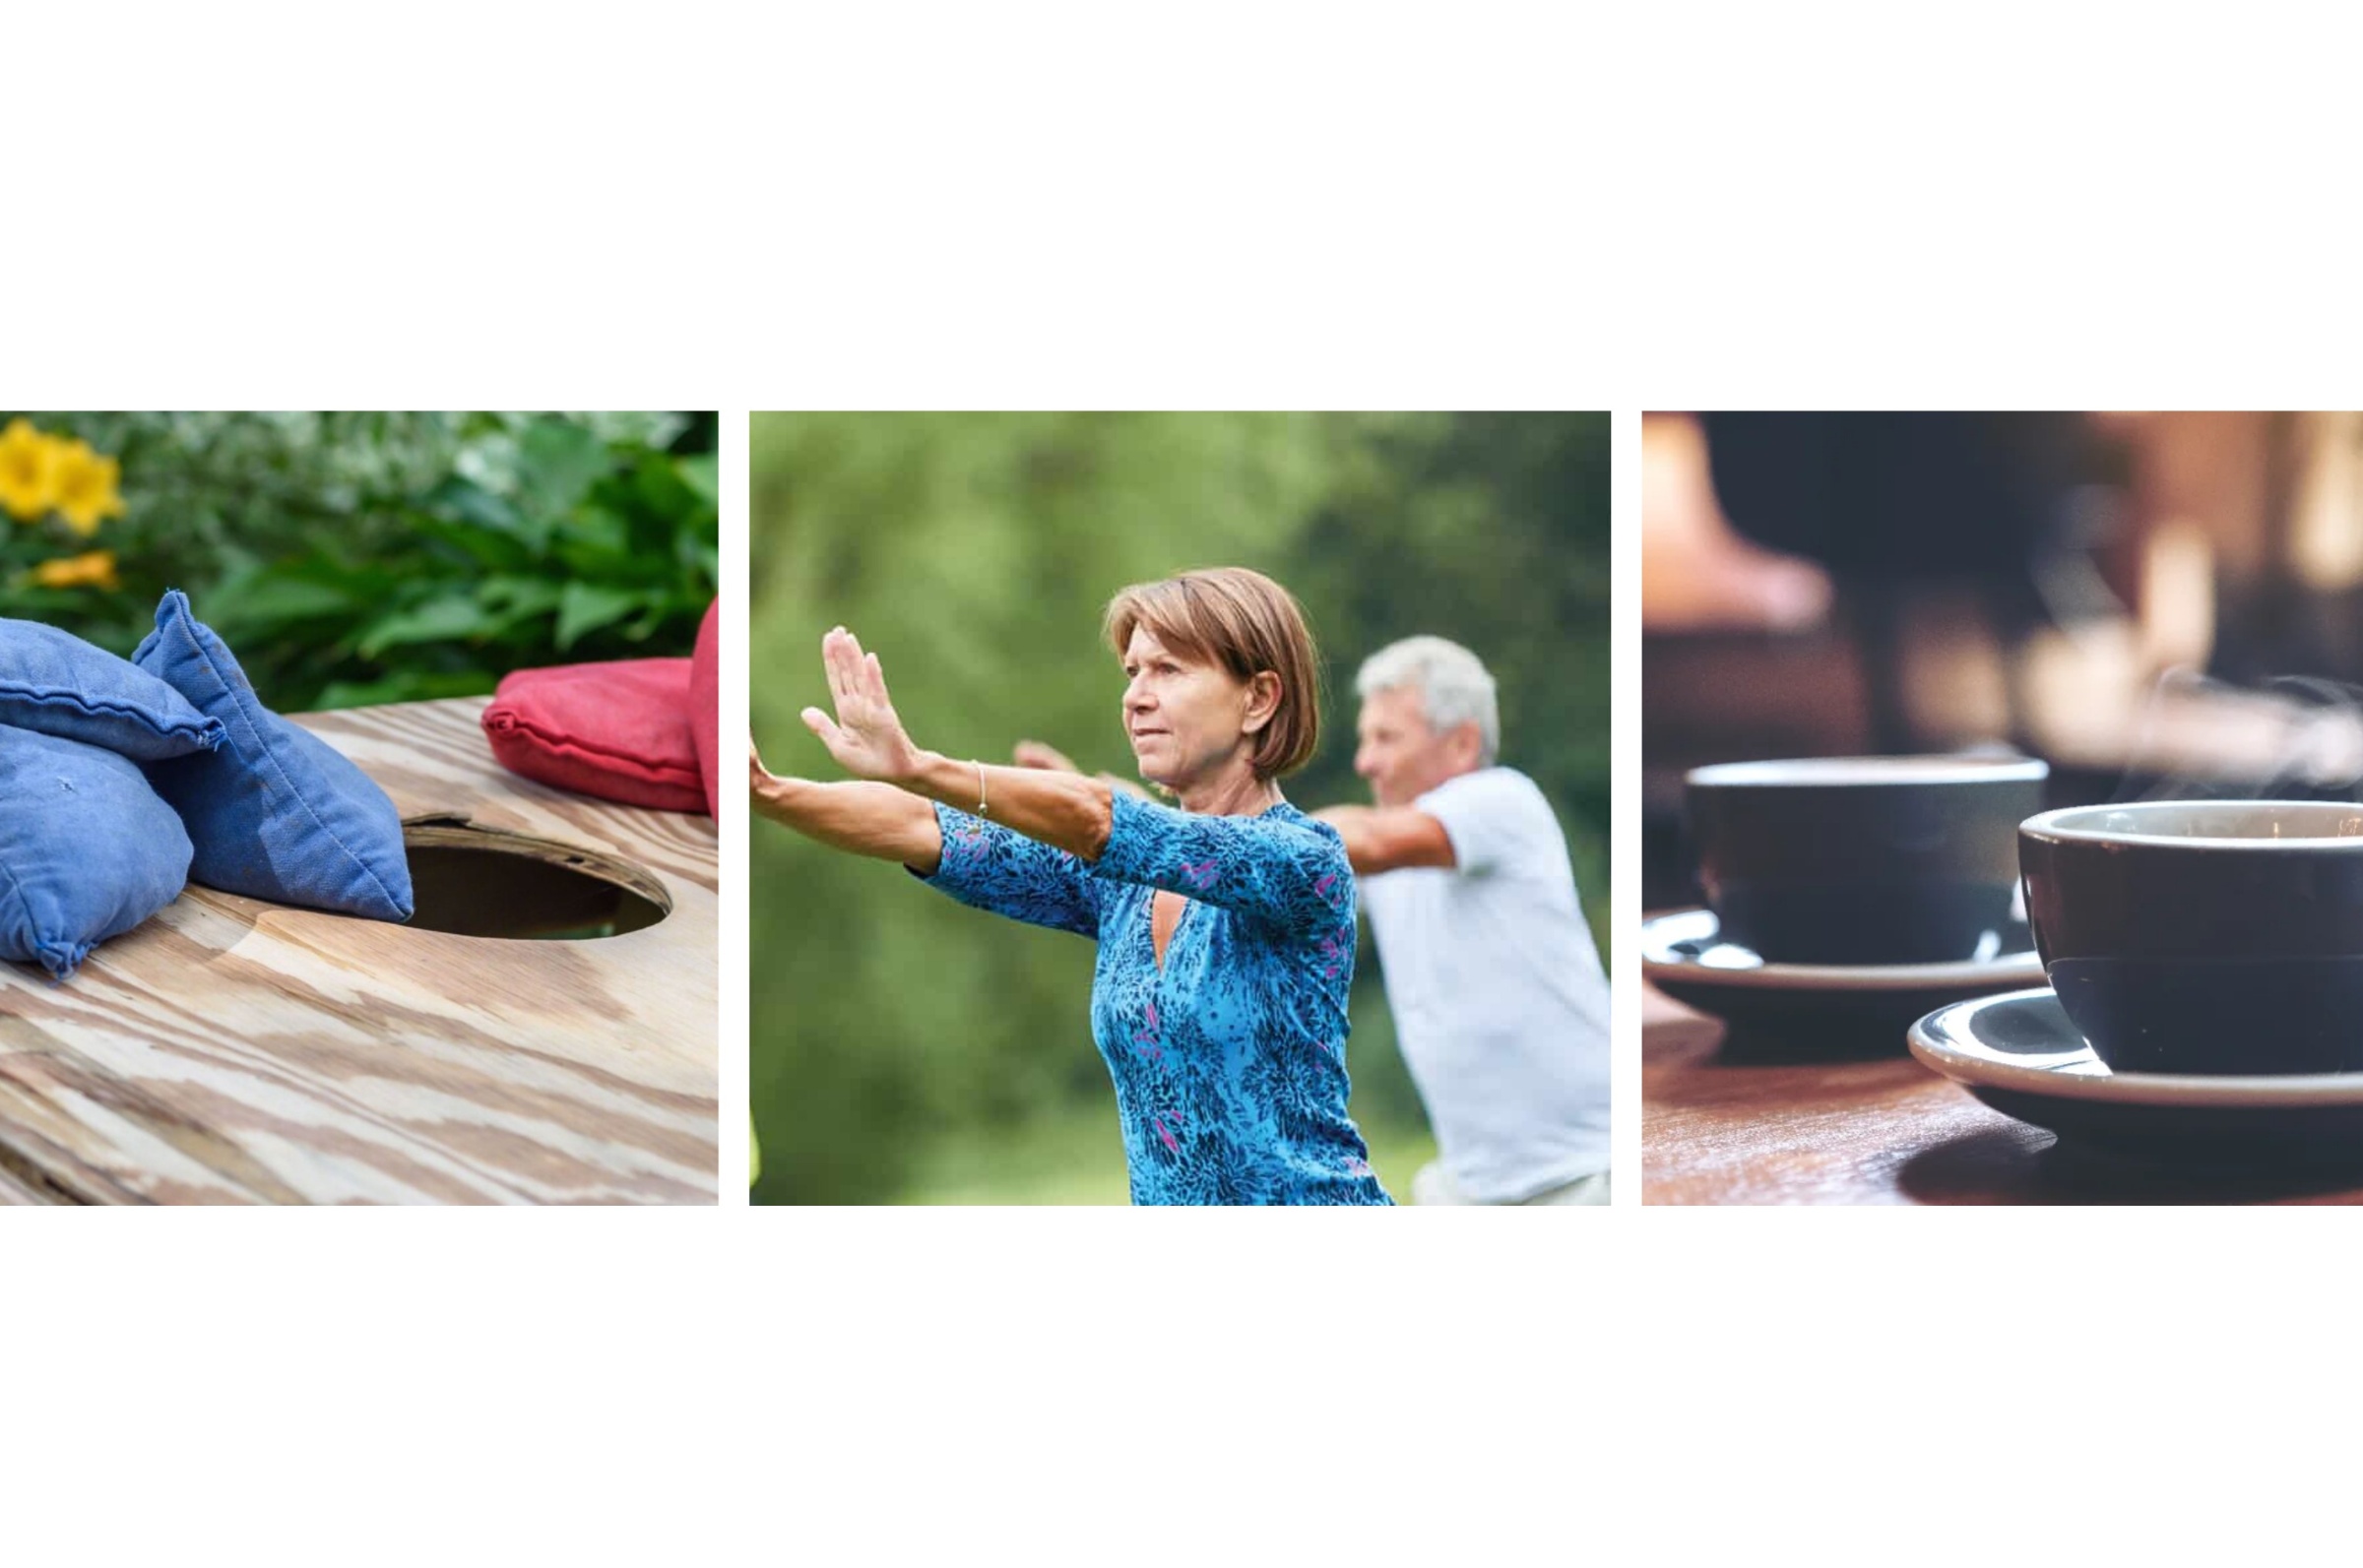 Kolme kuvaa: vasemmalla tyynyjä penkin päällä, keskellä ihmisiä harjoittamassa qigong-terveysliikuntaa, ja oikealla kaksi höyryävää kahvikuppia.